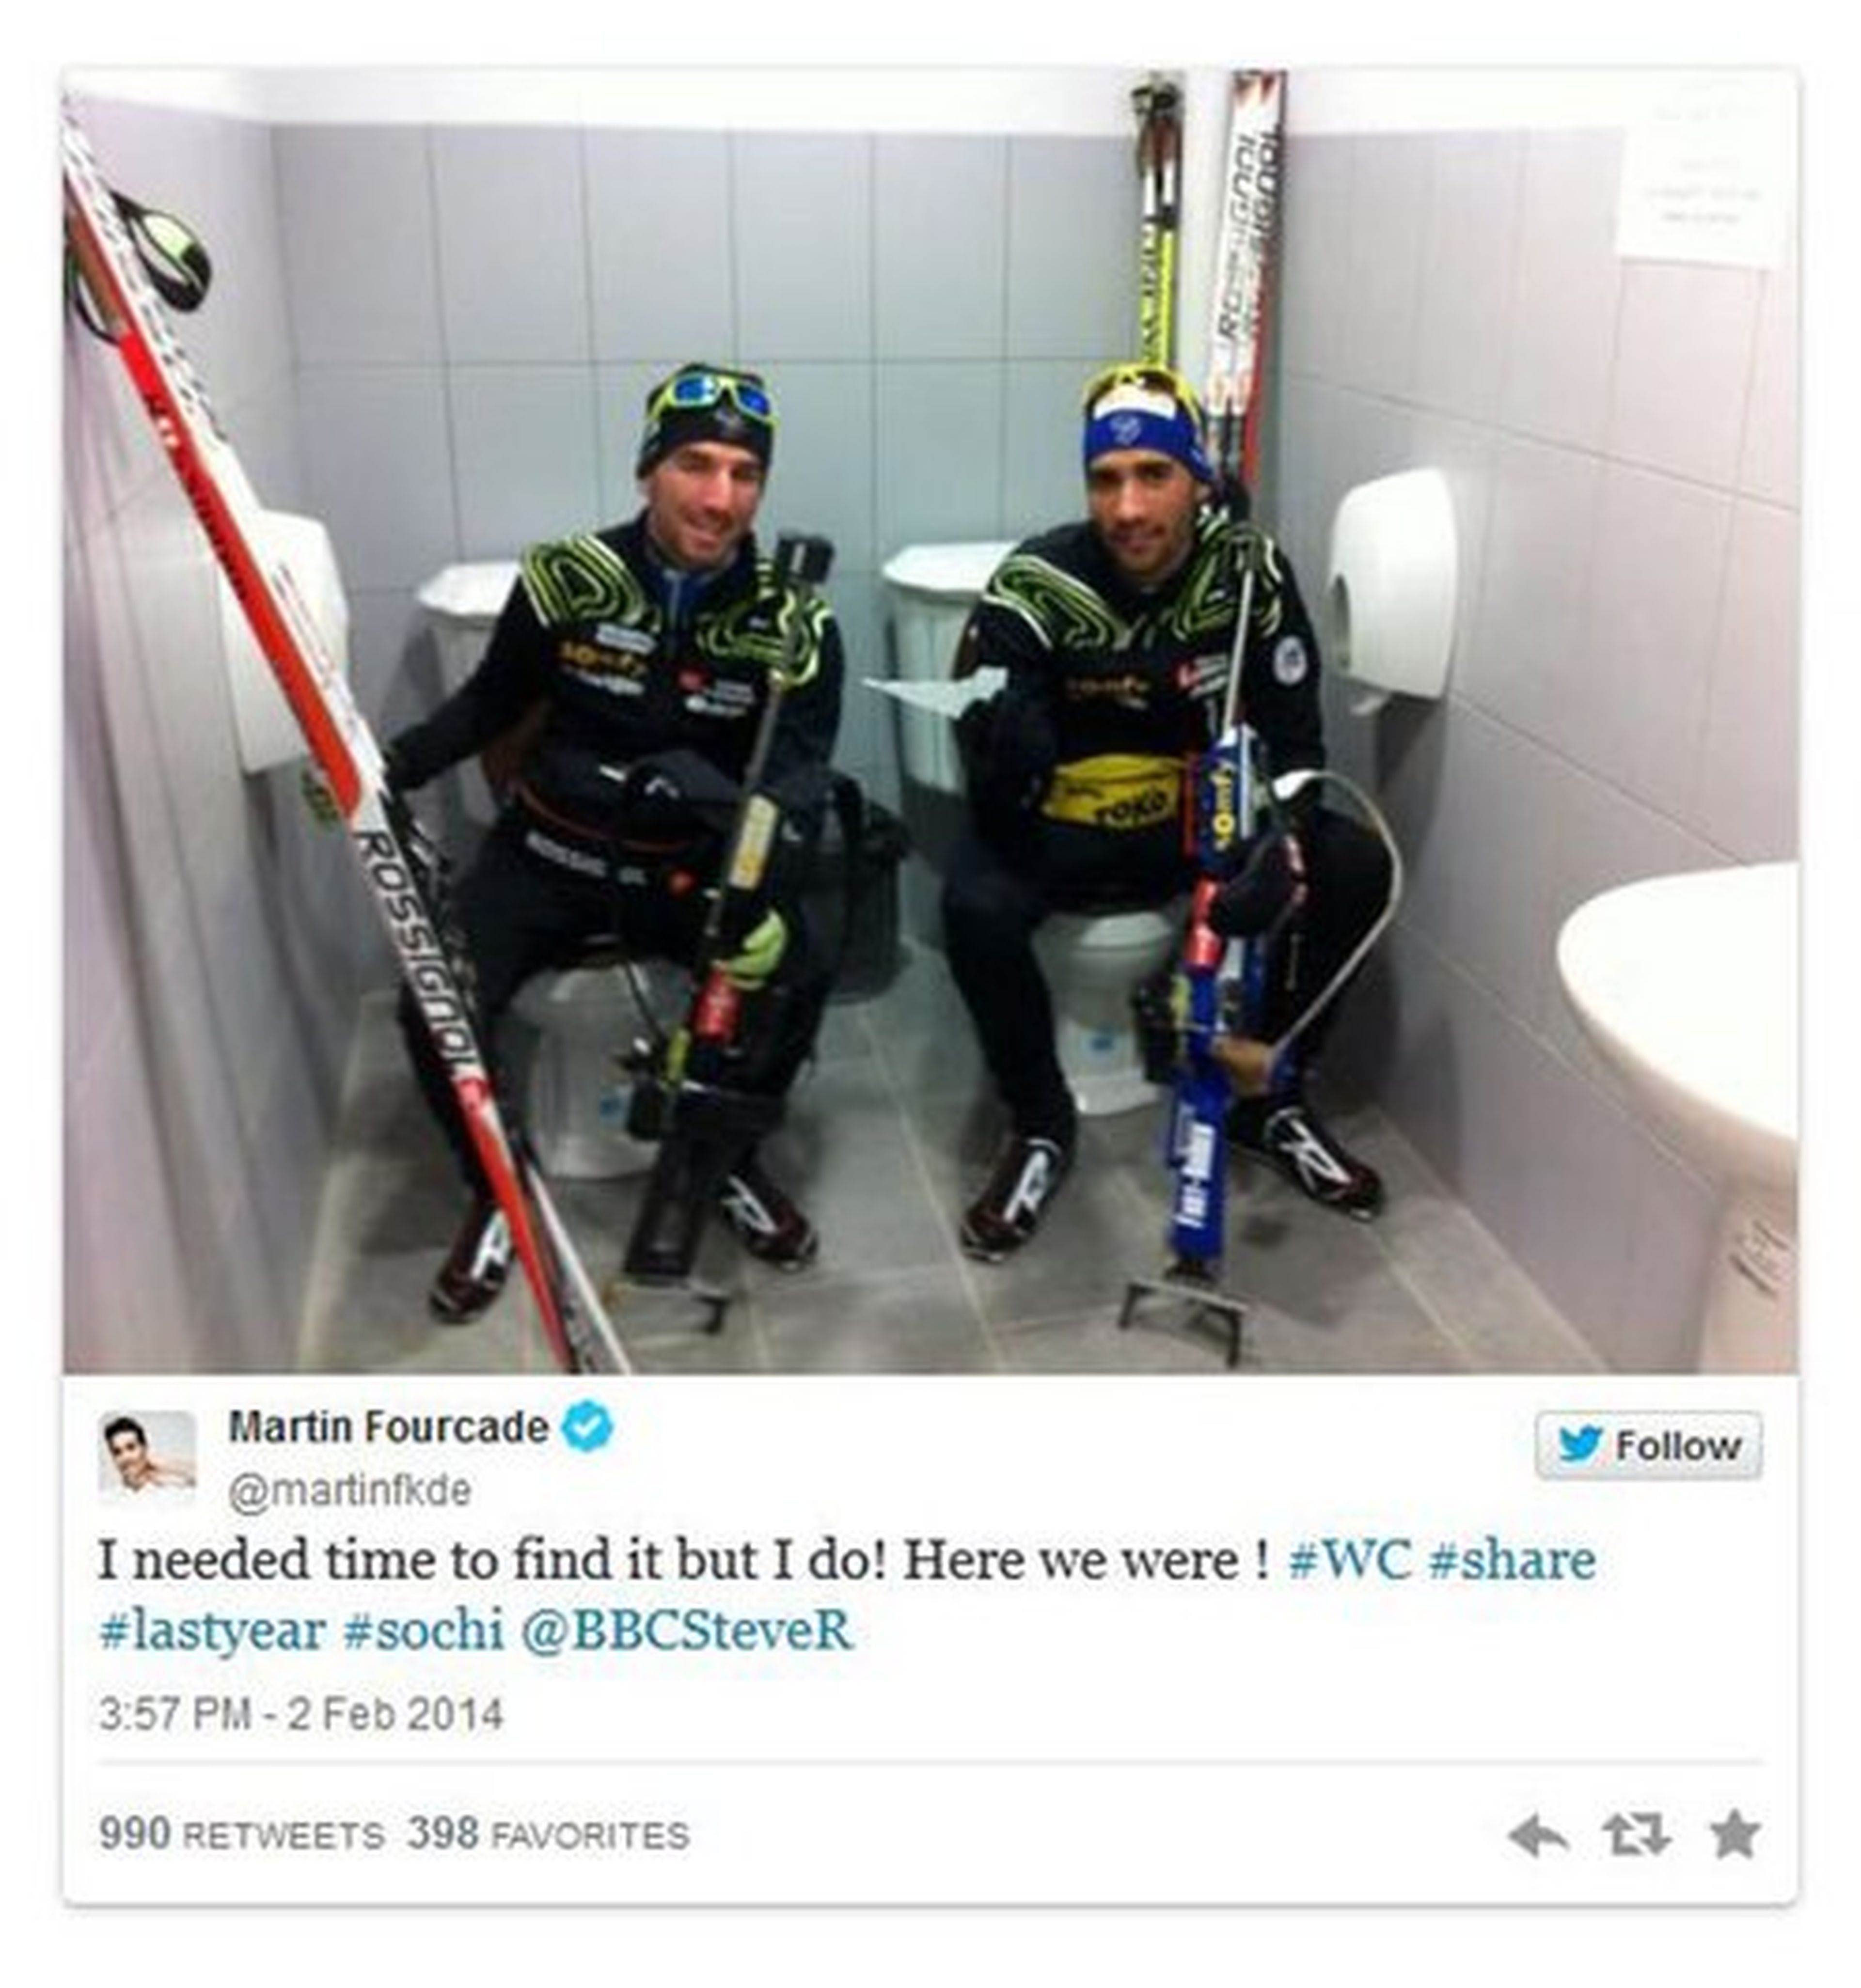 Las increíbles fotos de los atletas de Sochi 2014 en Twitter